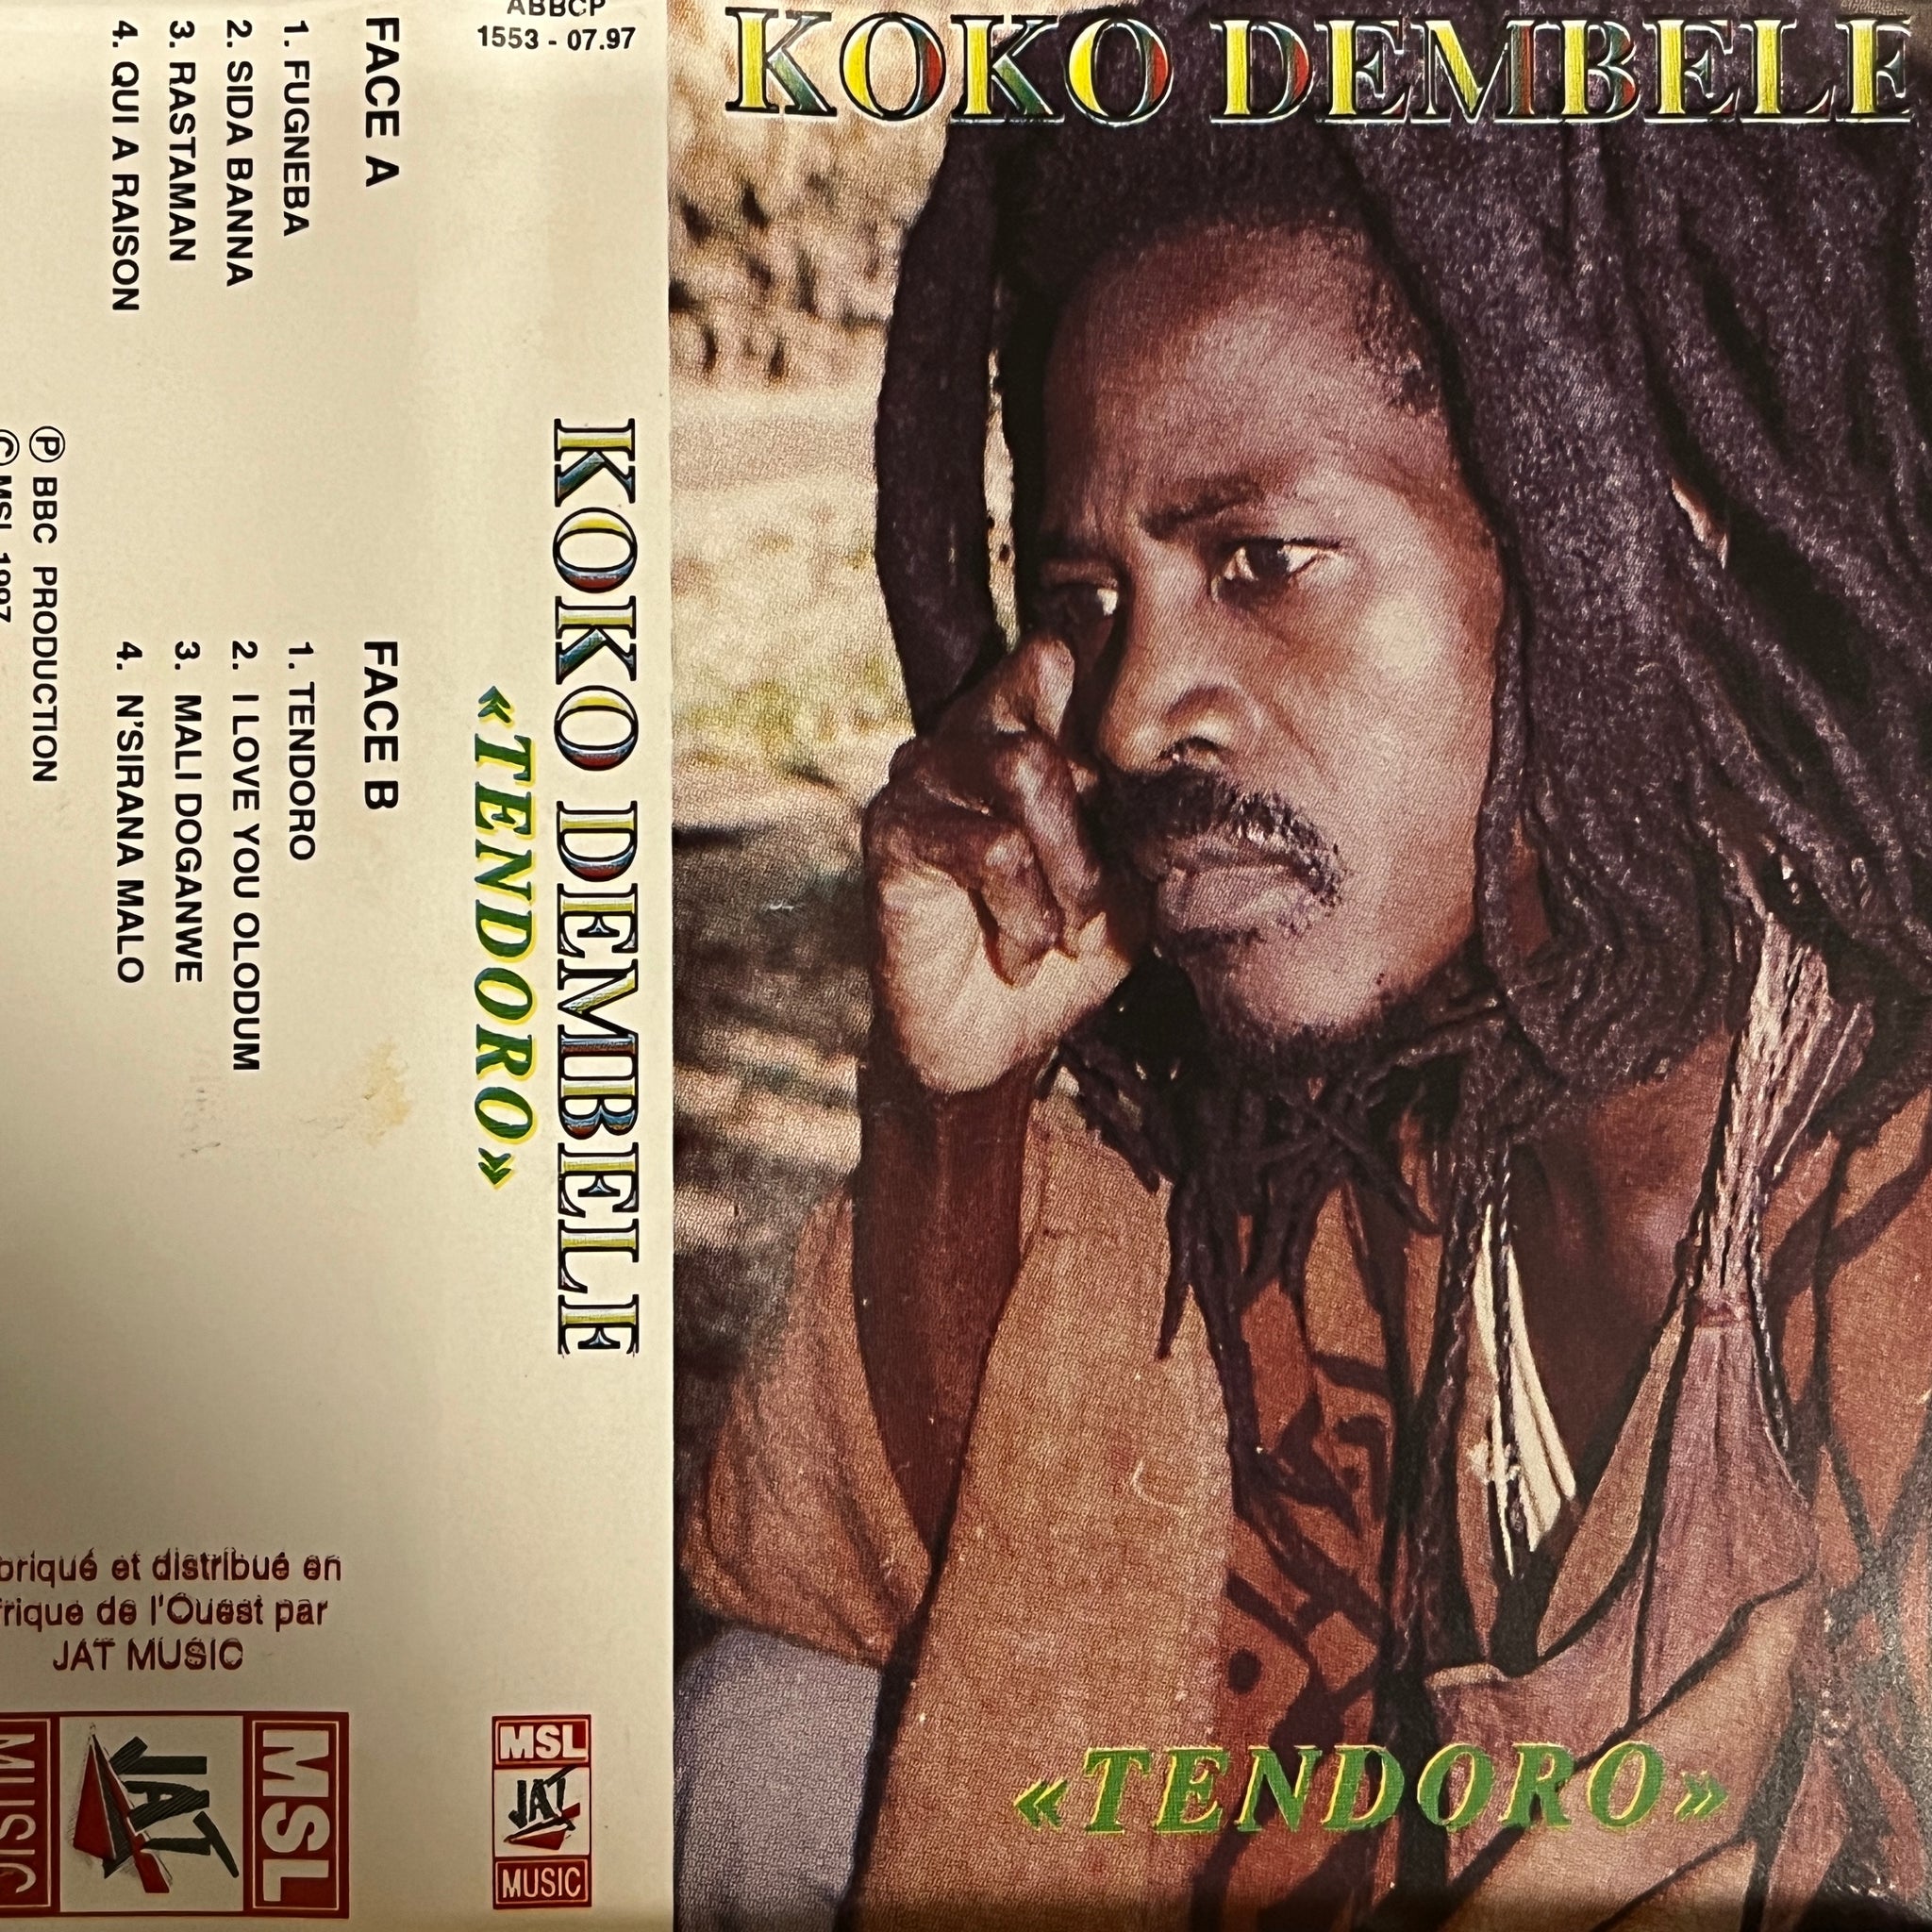 Koko Dembele – Tendoro